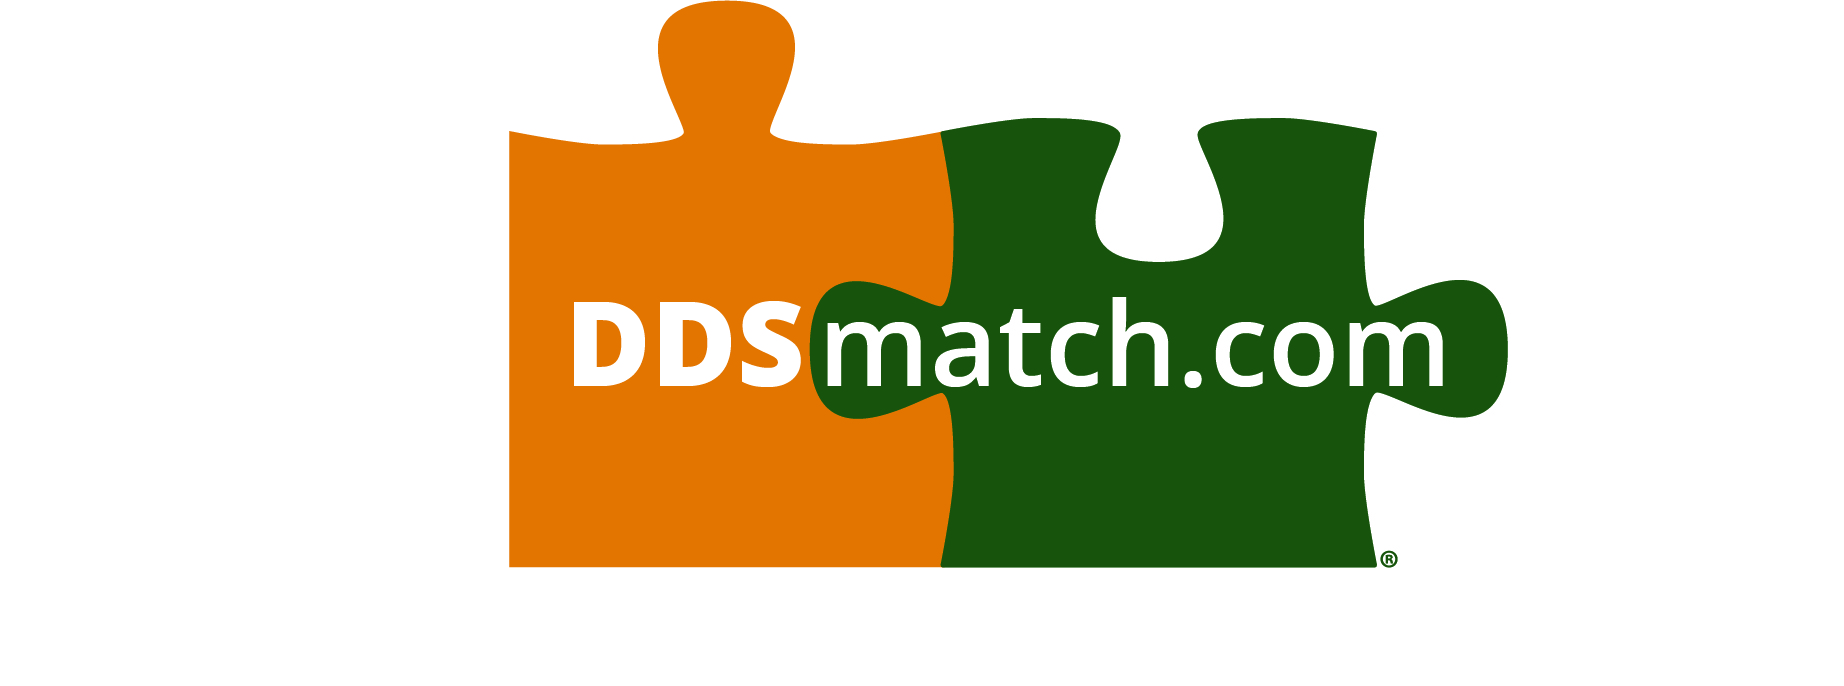 ddsmatch.com - Mike Rogers Logo